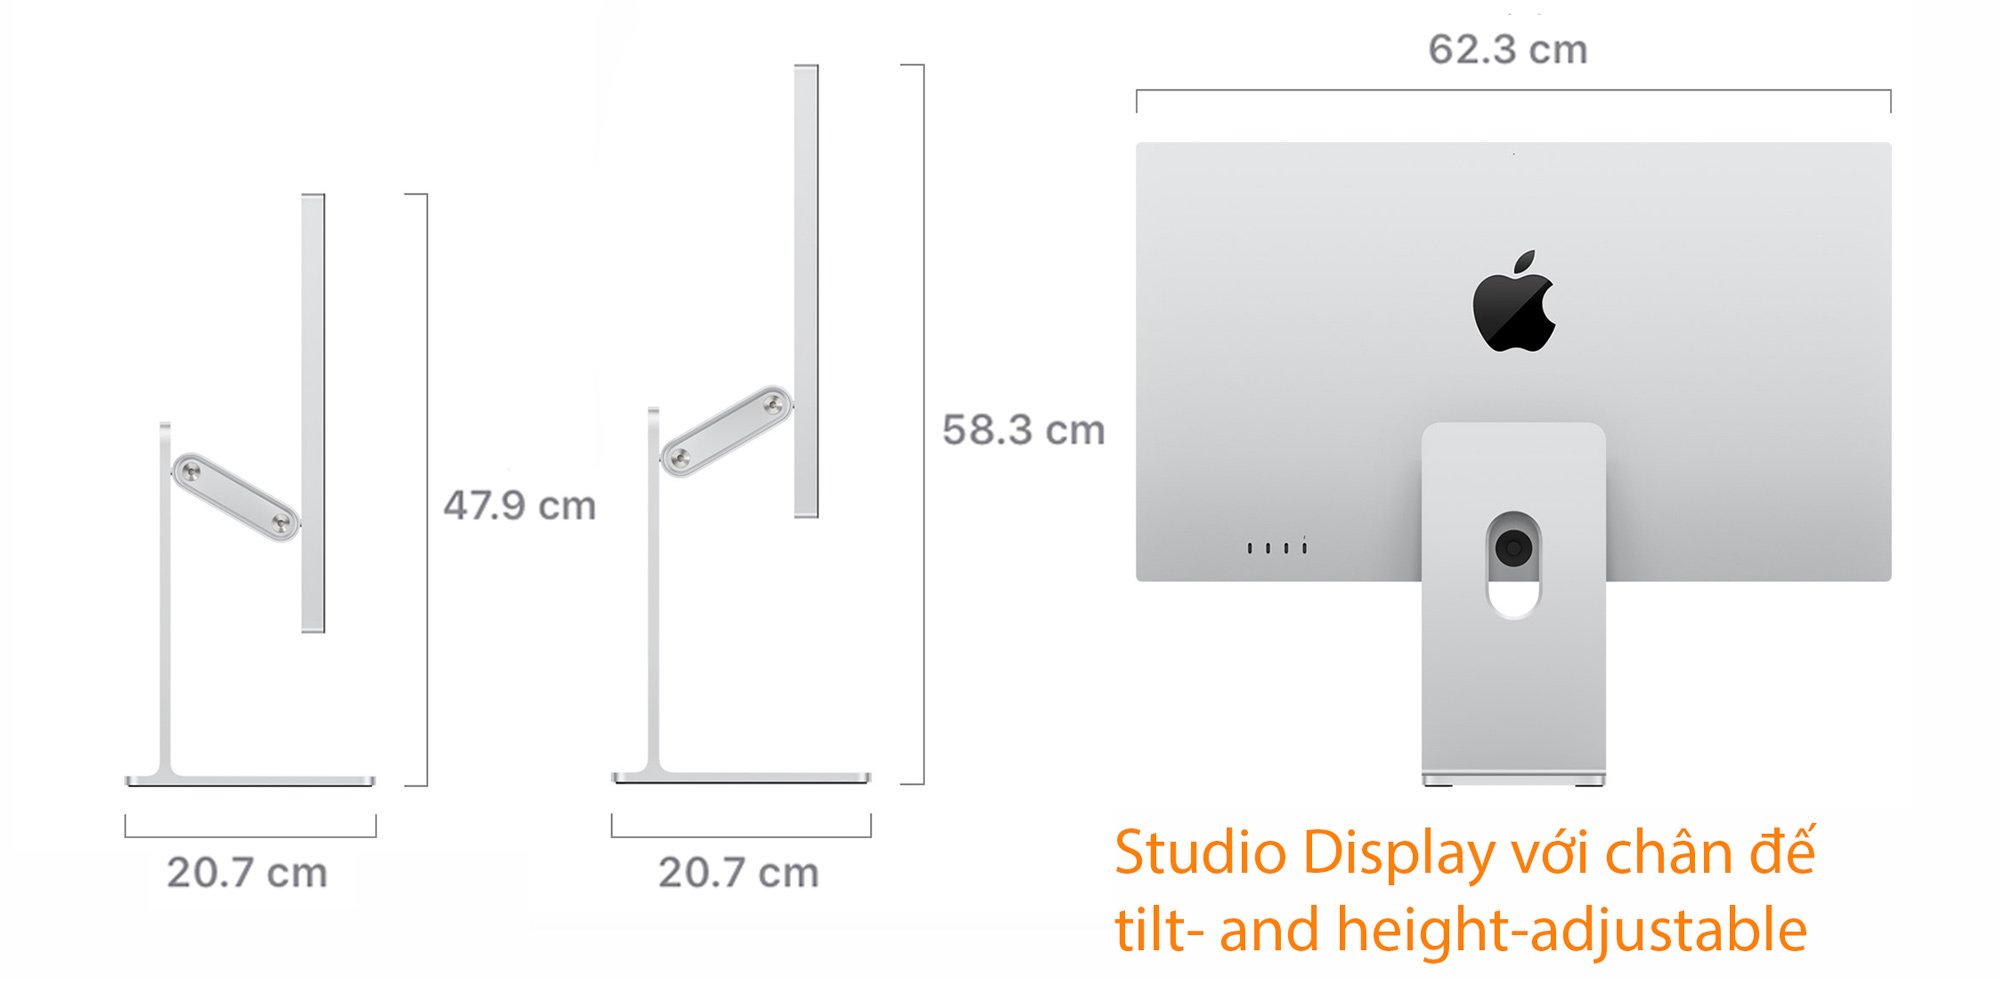 Studio Display có bao nhiêu tùy chọn chân đế ? Và chi tiết từng loại ?